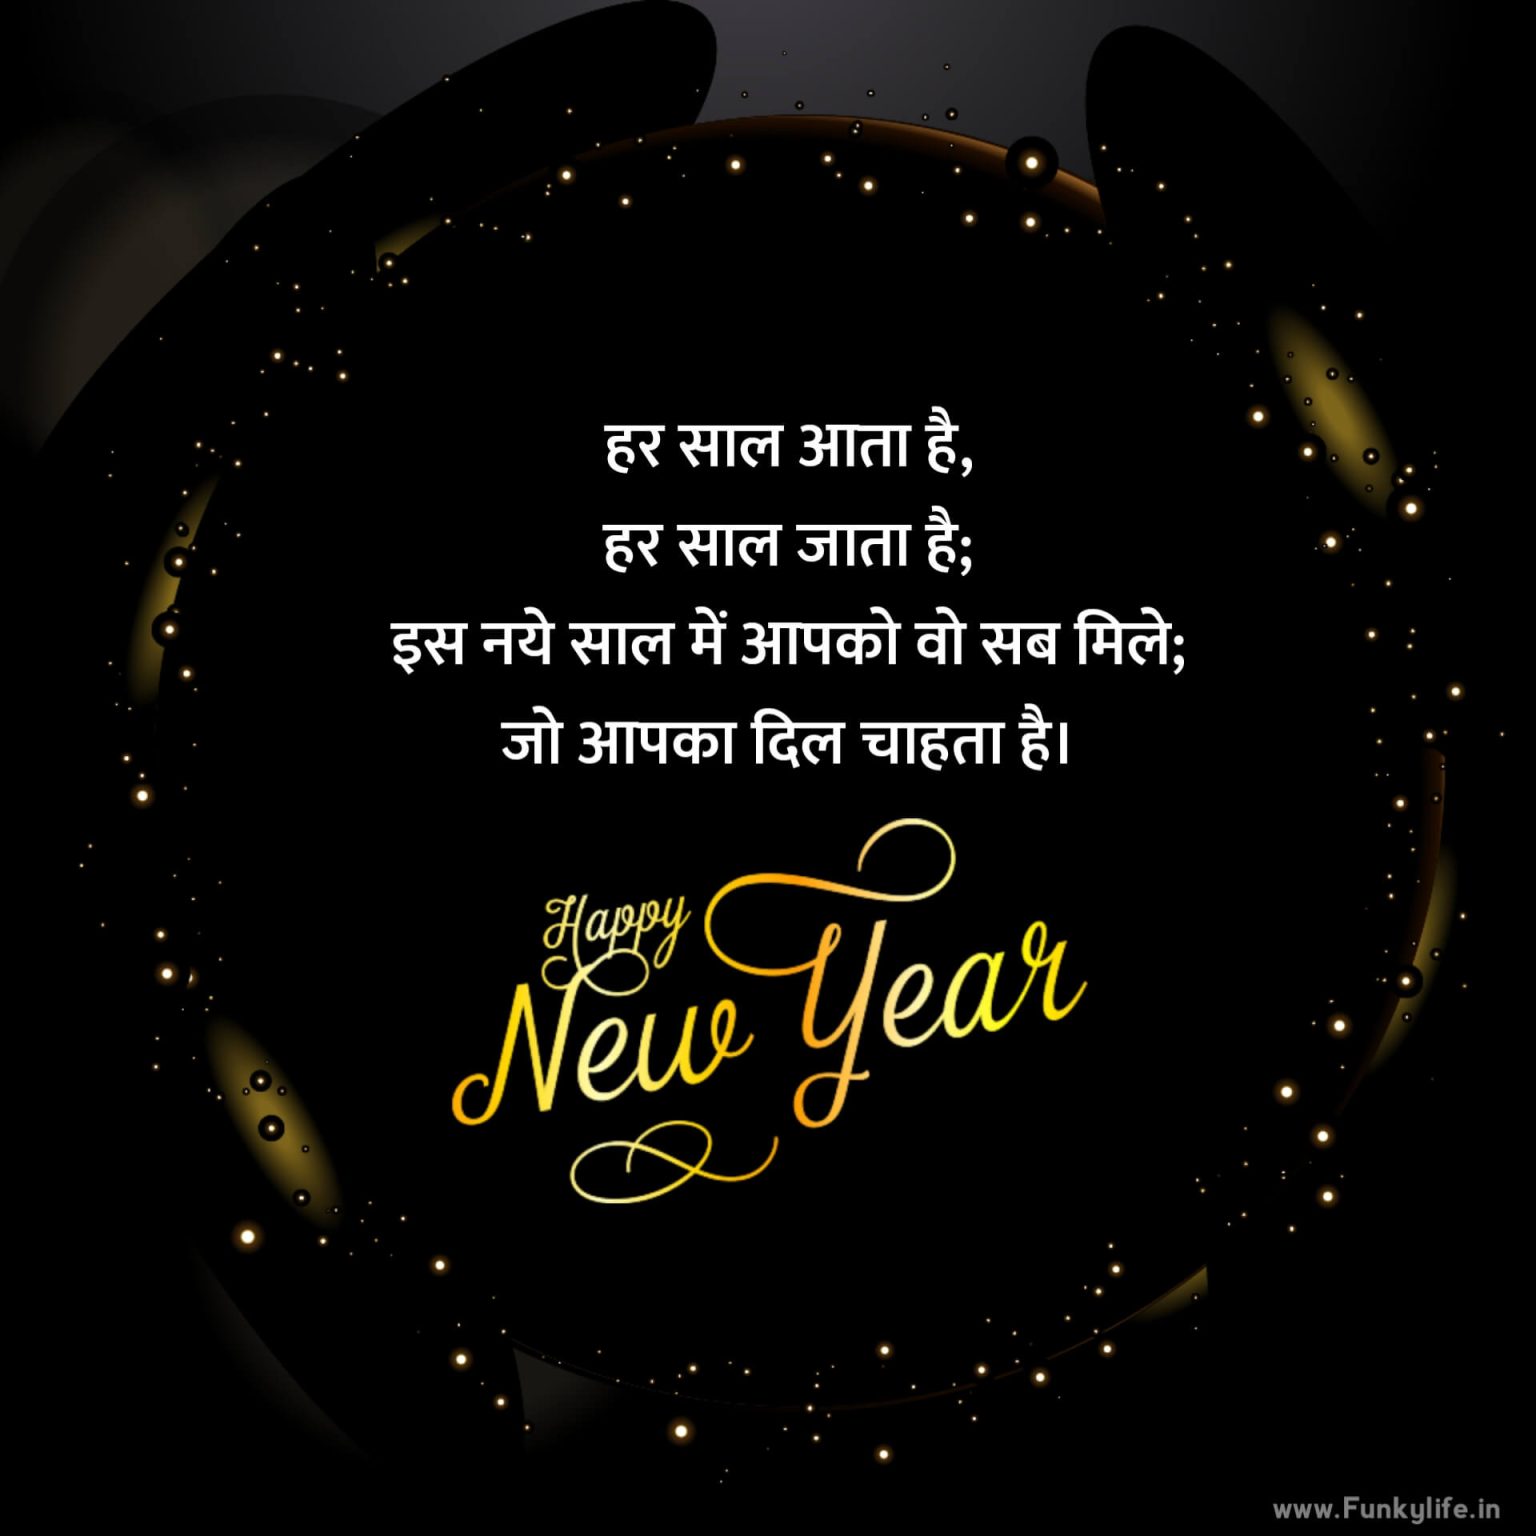 Happy New Year Wishes in Hindi 2022 नव वर्ष की शुभकामनाएं हिंदी में